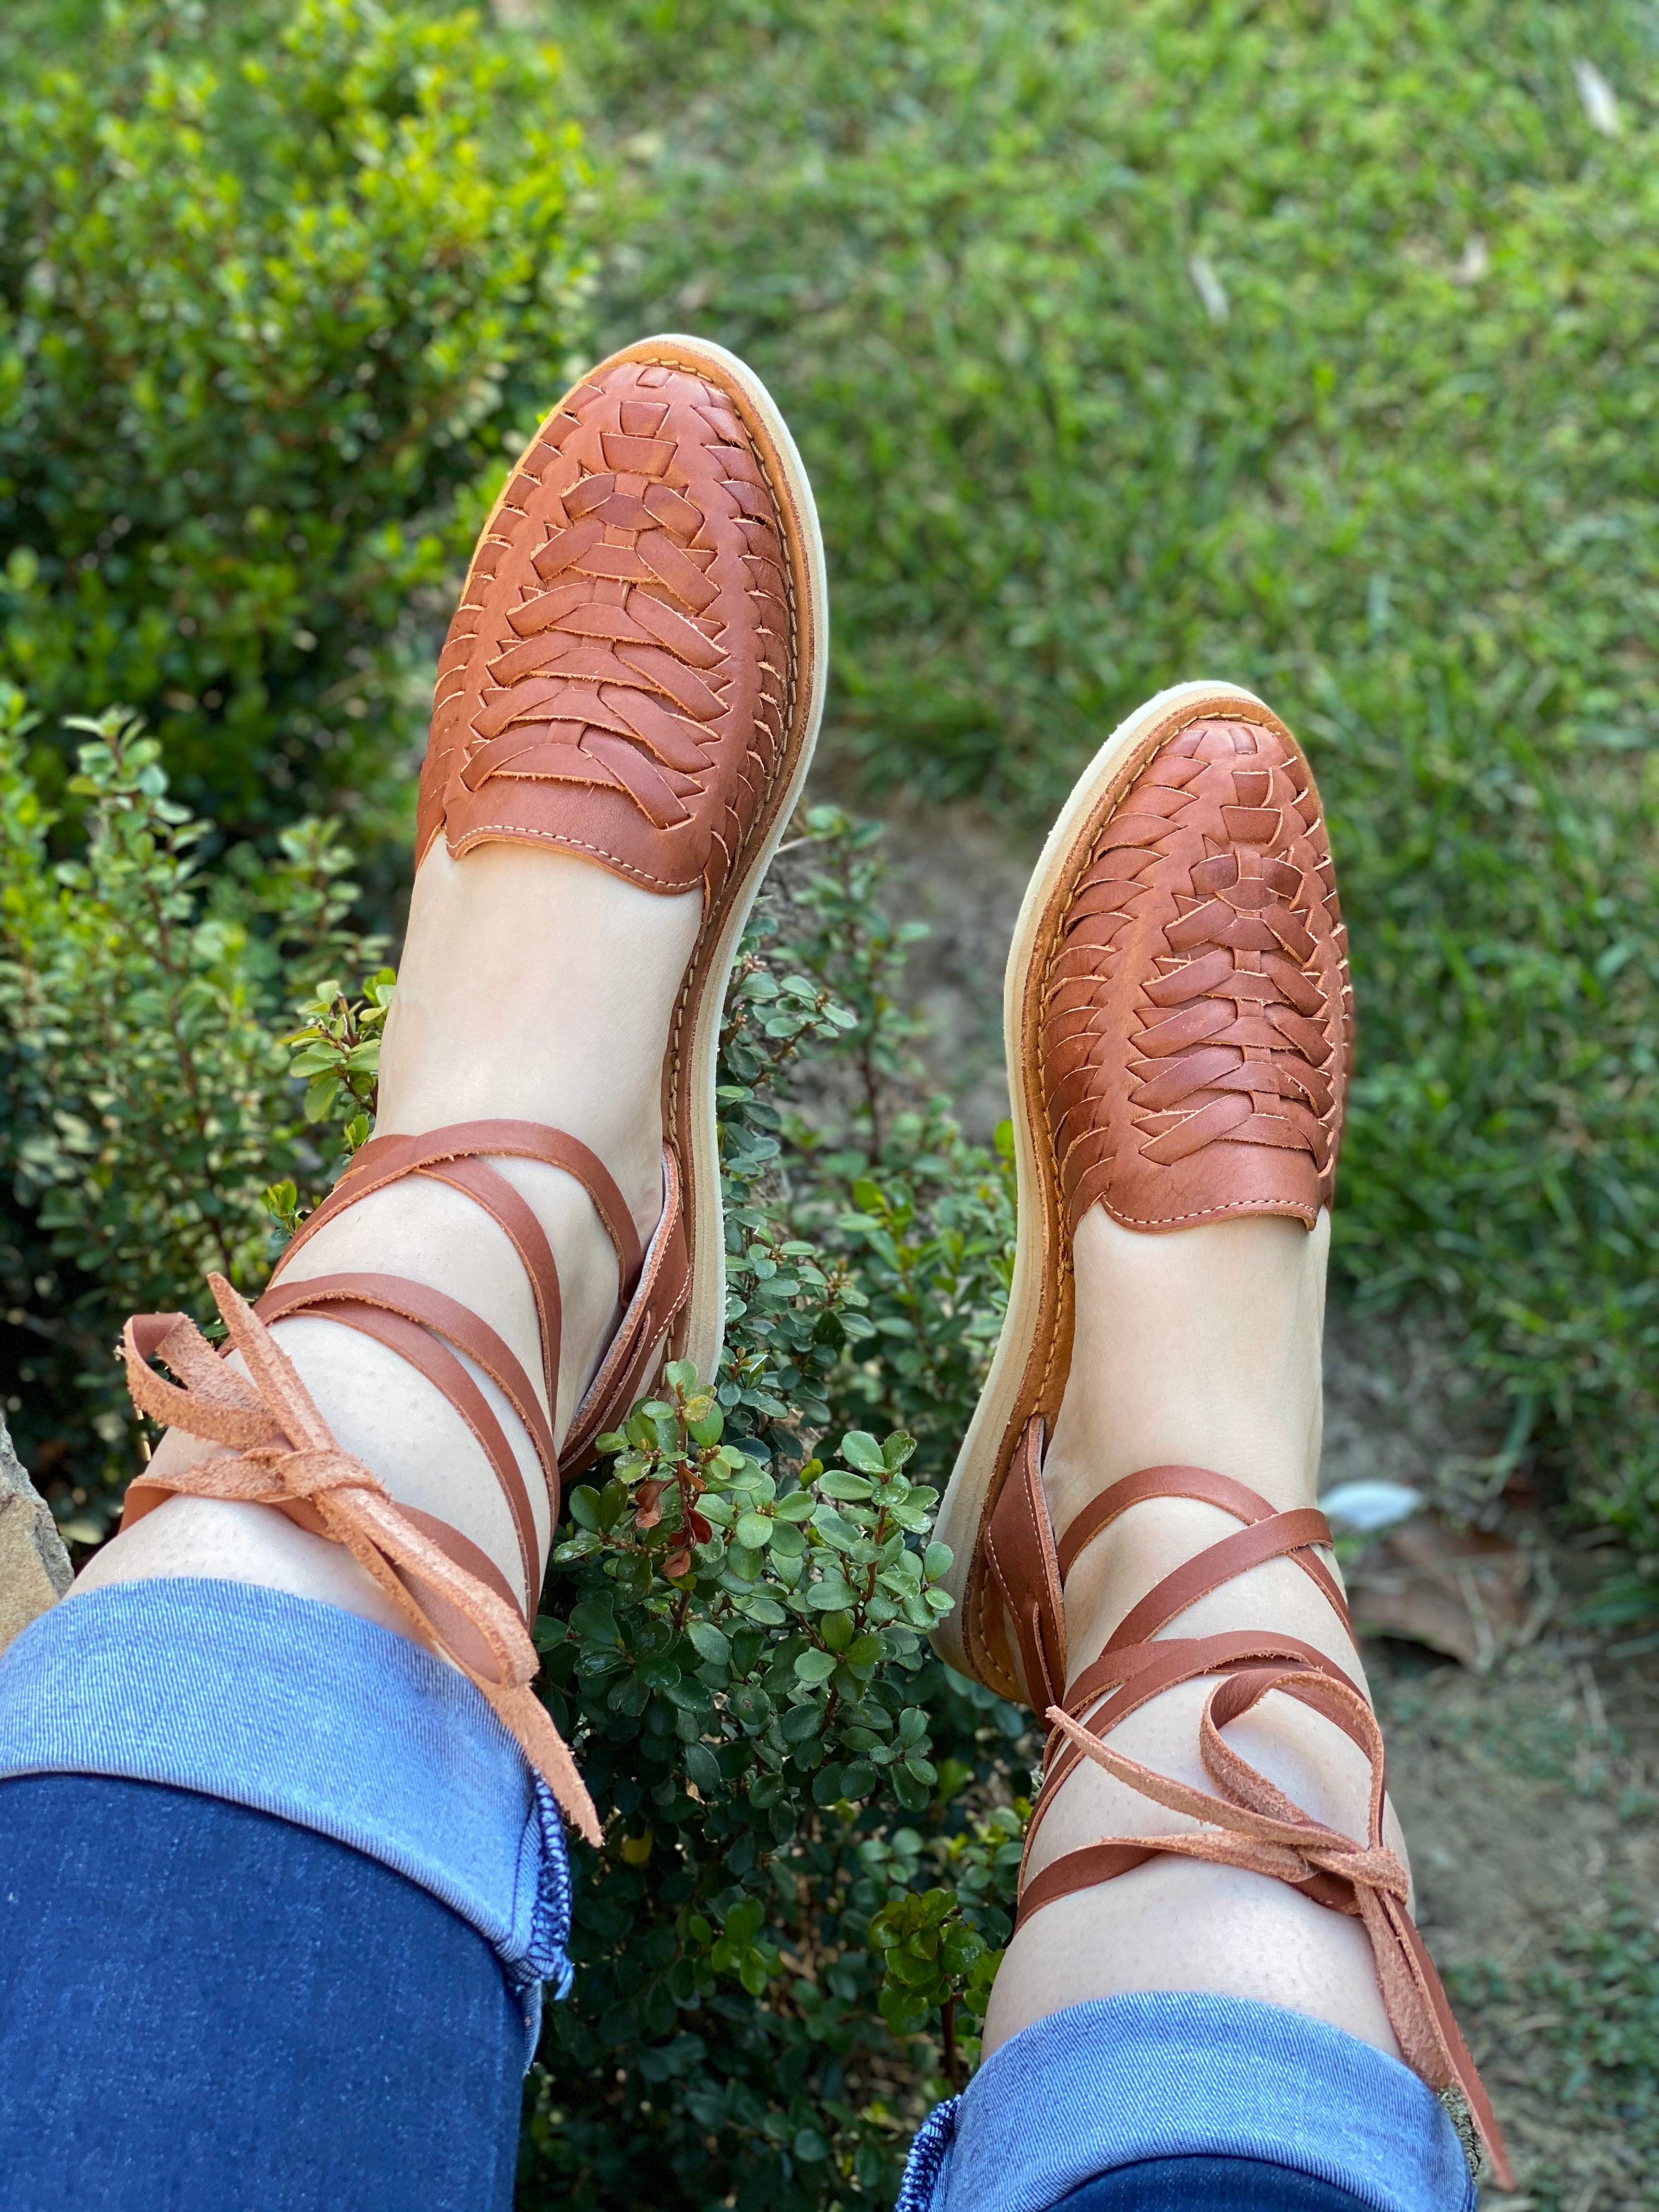 lace up huarache sandals